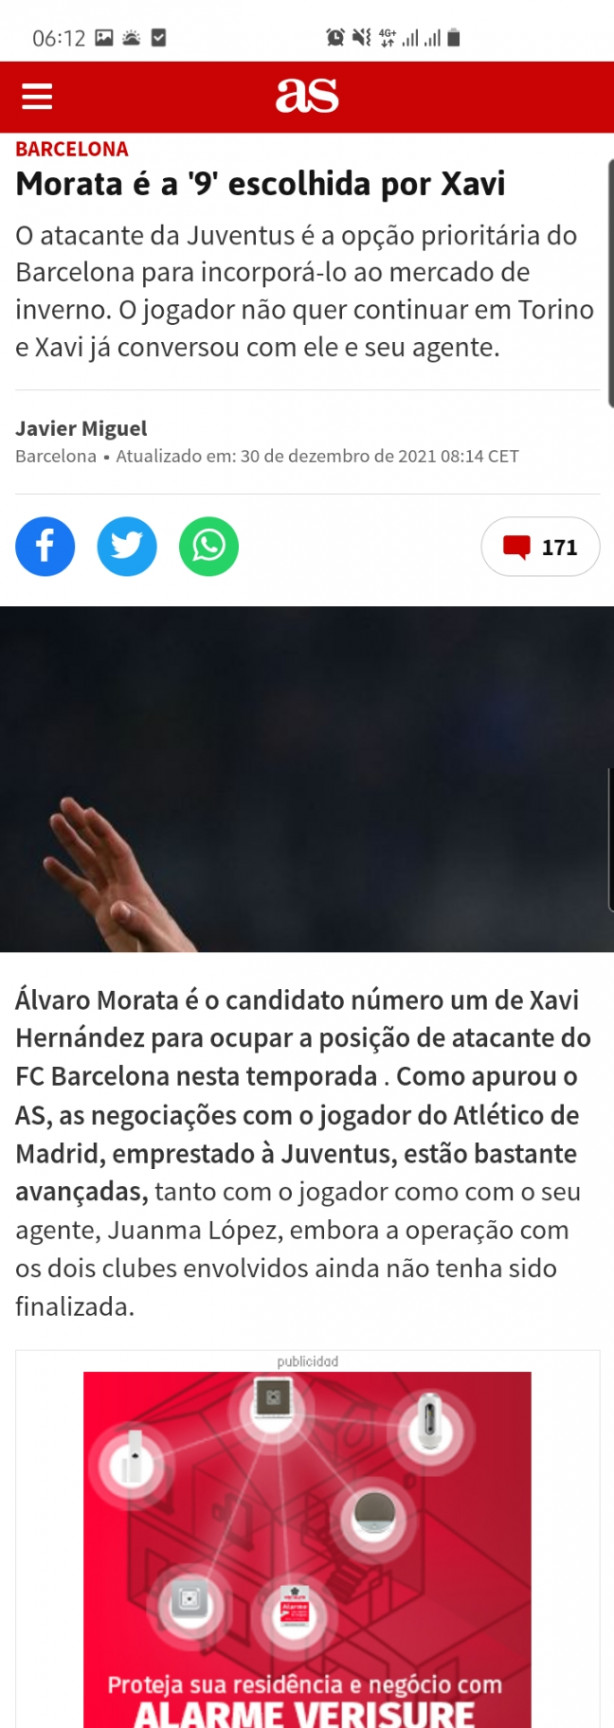 Notcias boa para Corinthians, caso seja confirmado!